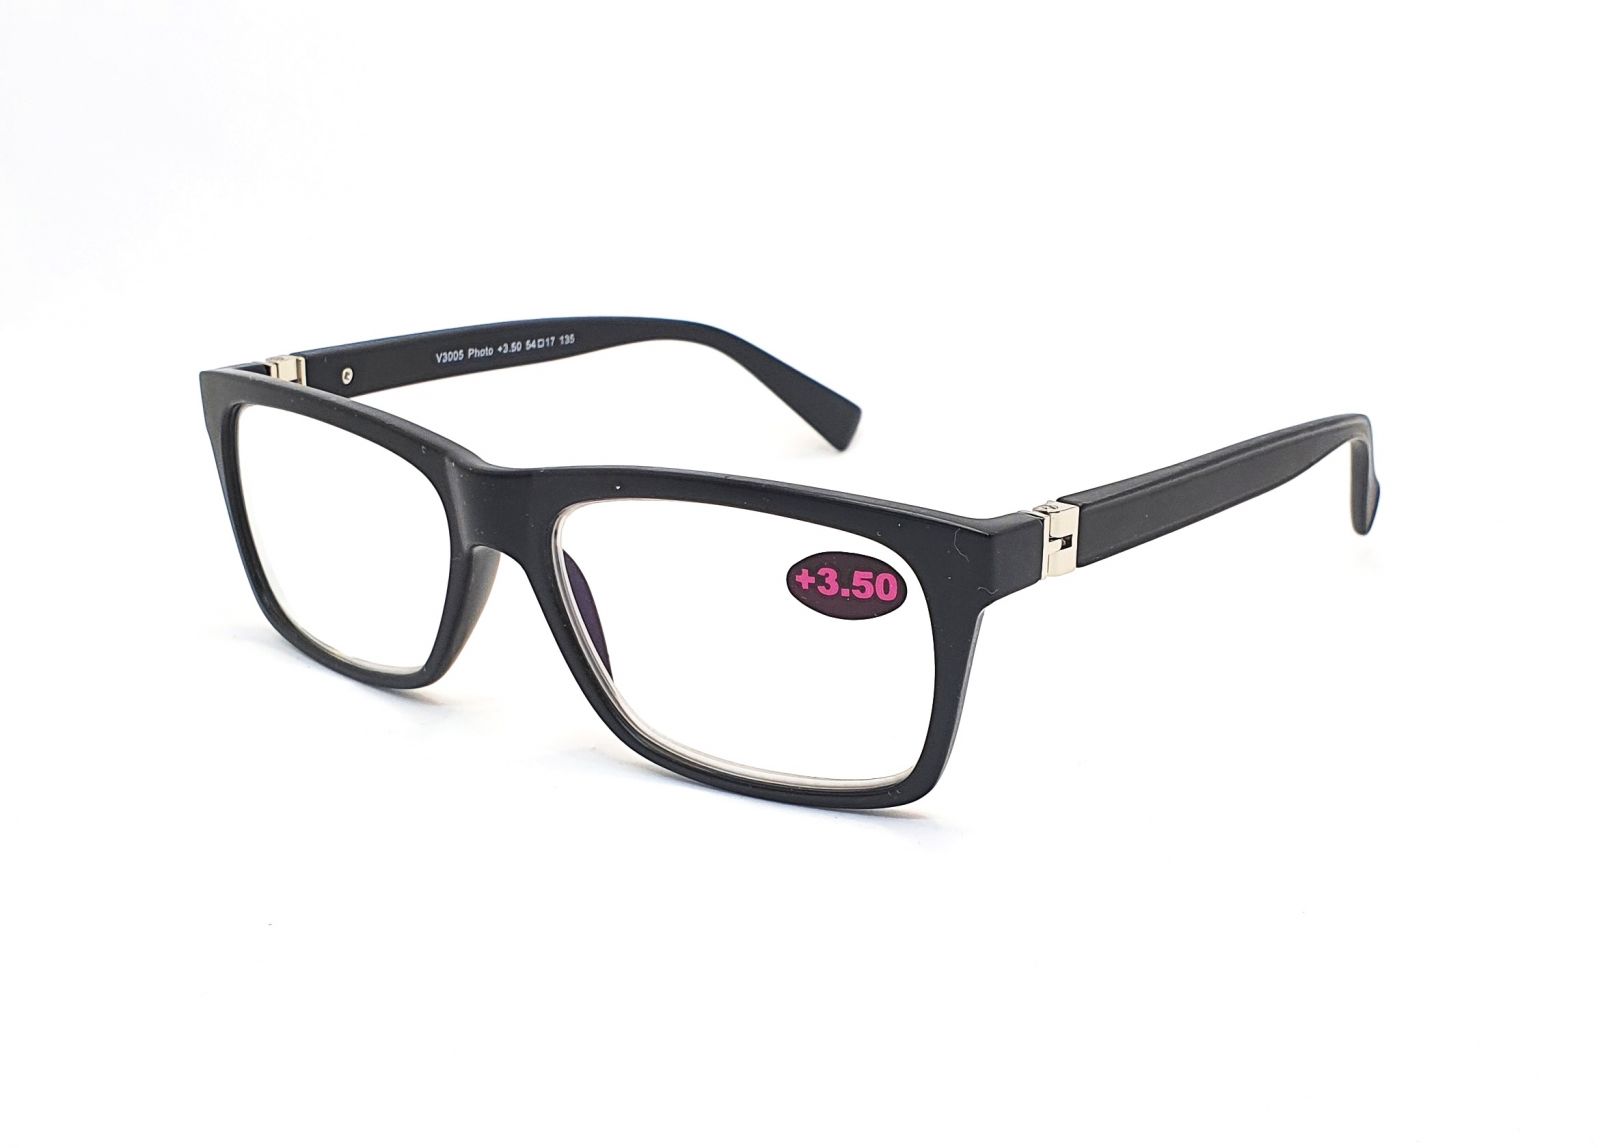 Samozabarvovací dioptrické brýle V3005 / +3,50 black flex Cat.0-2 E-batoh